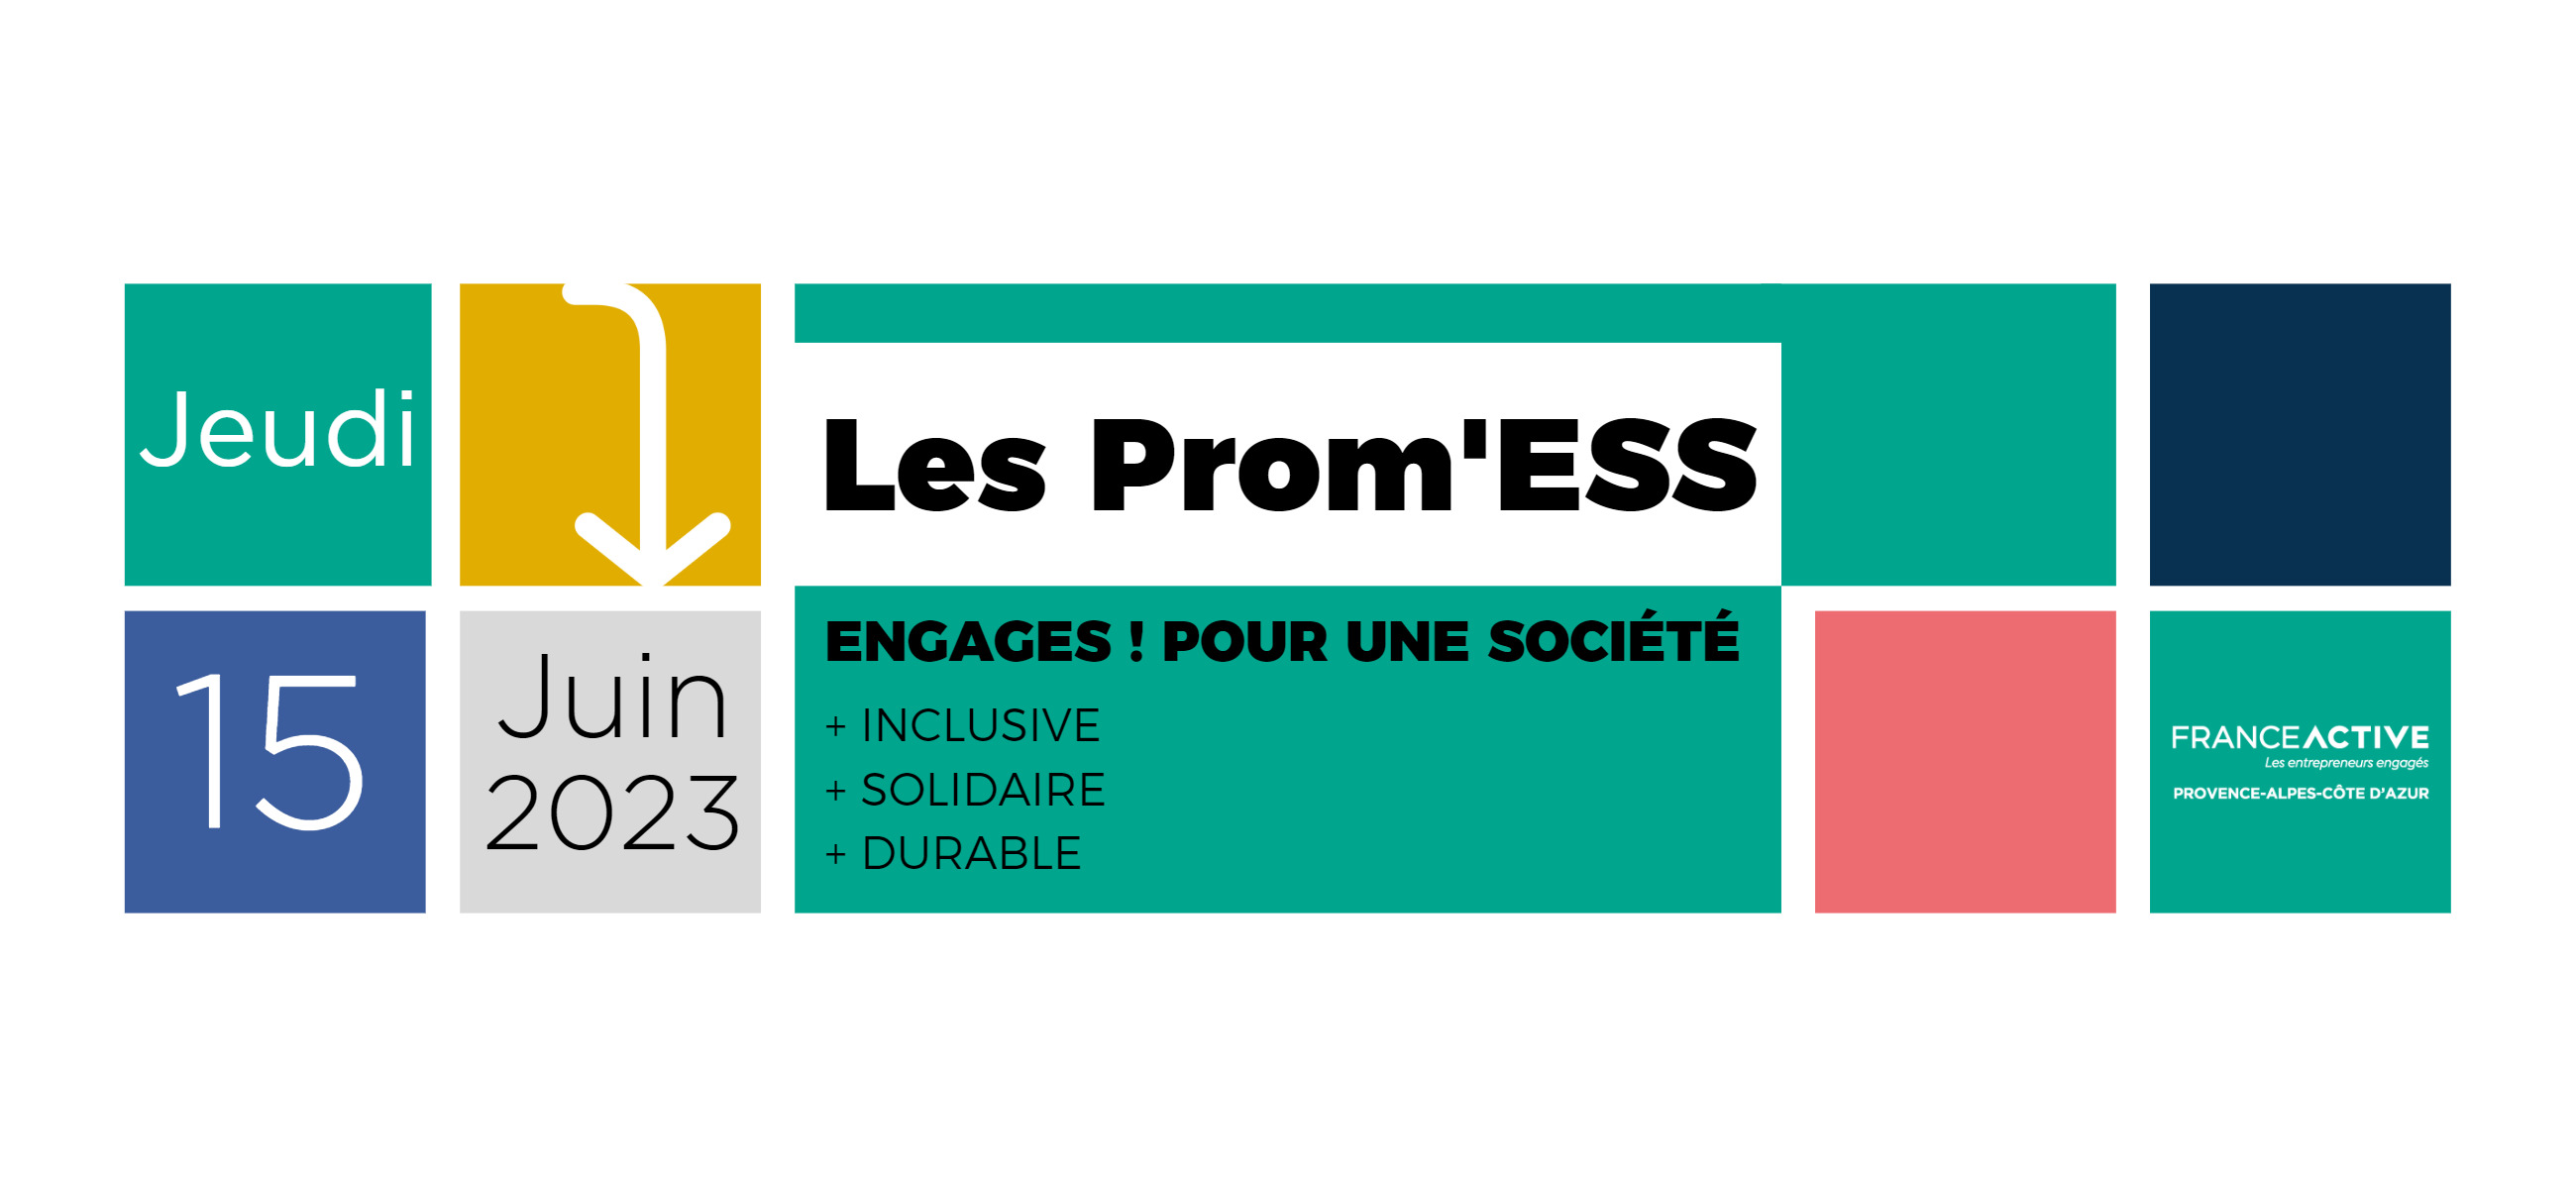 France Active Provence-Alpes-Côte d'Azur vous convie à la remise des Prom'ESS